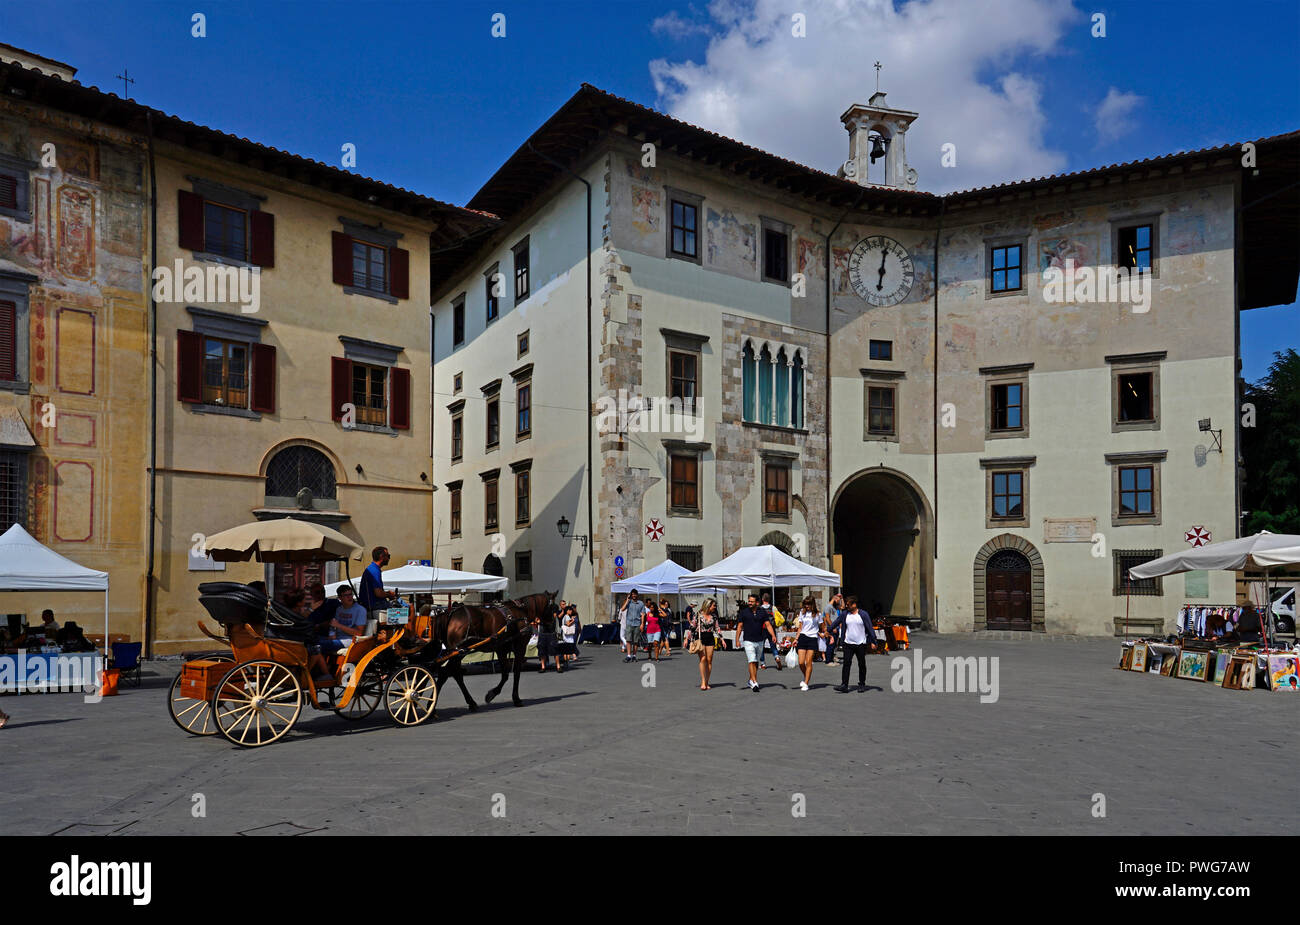 Carruajes de caballos y el mercado en la piazza dei cavalleri,Pisa,Toscana,Italia,Europa Foto de stock